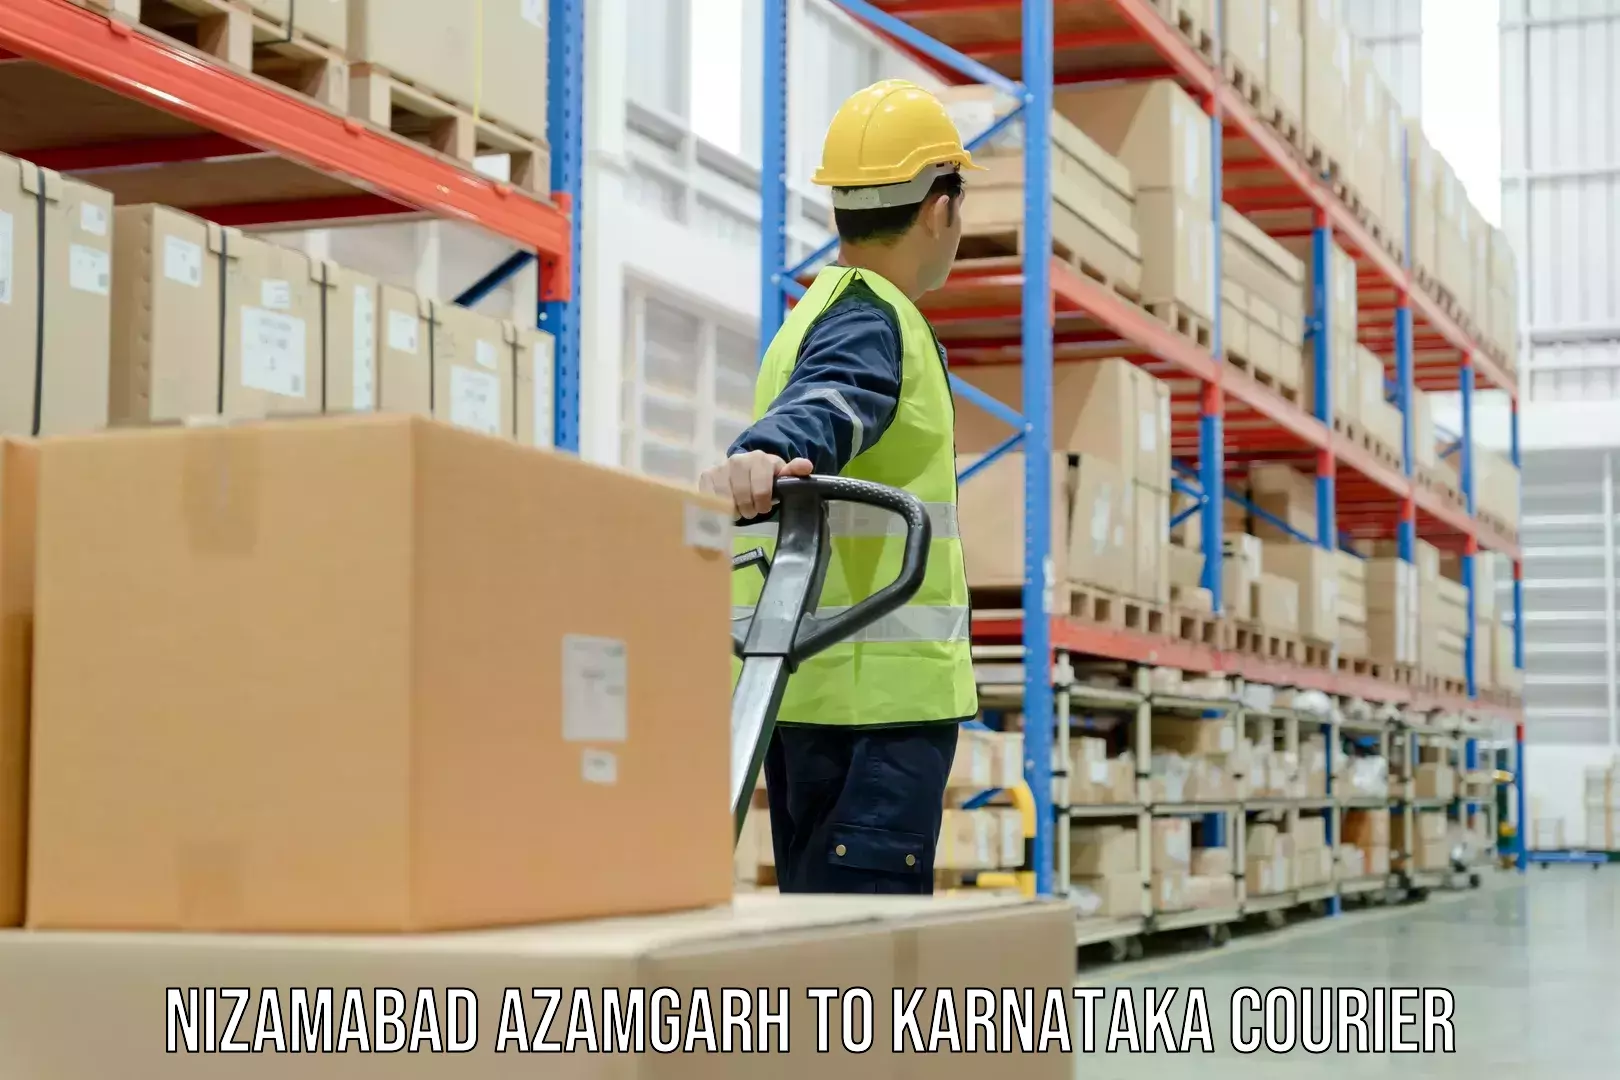 Customized shipping options Nizamabad Azamgarh to Bangalore